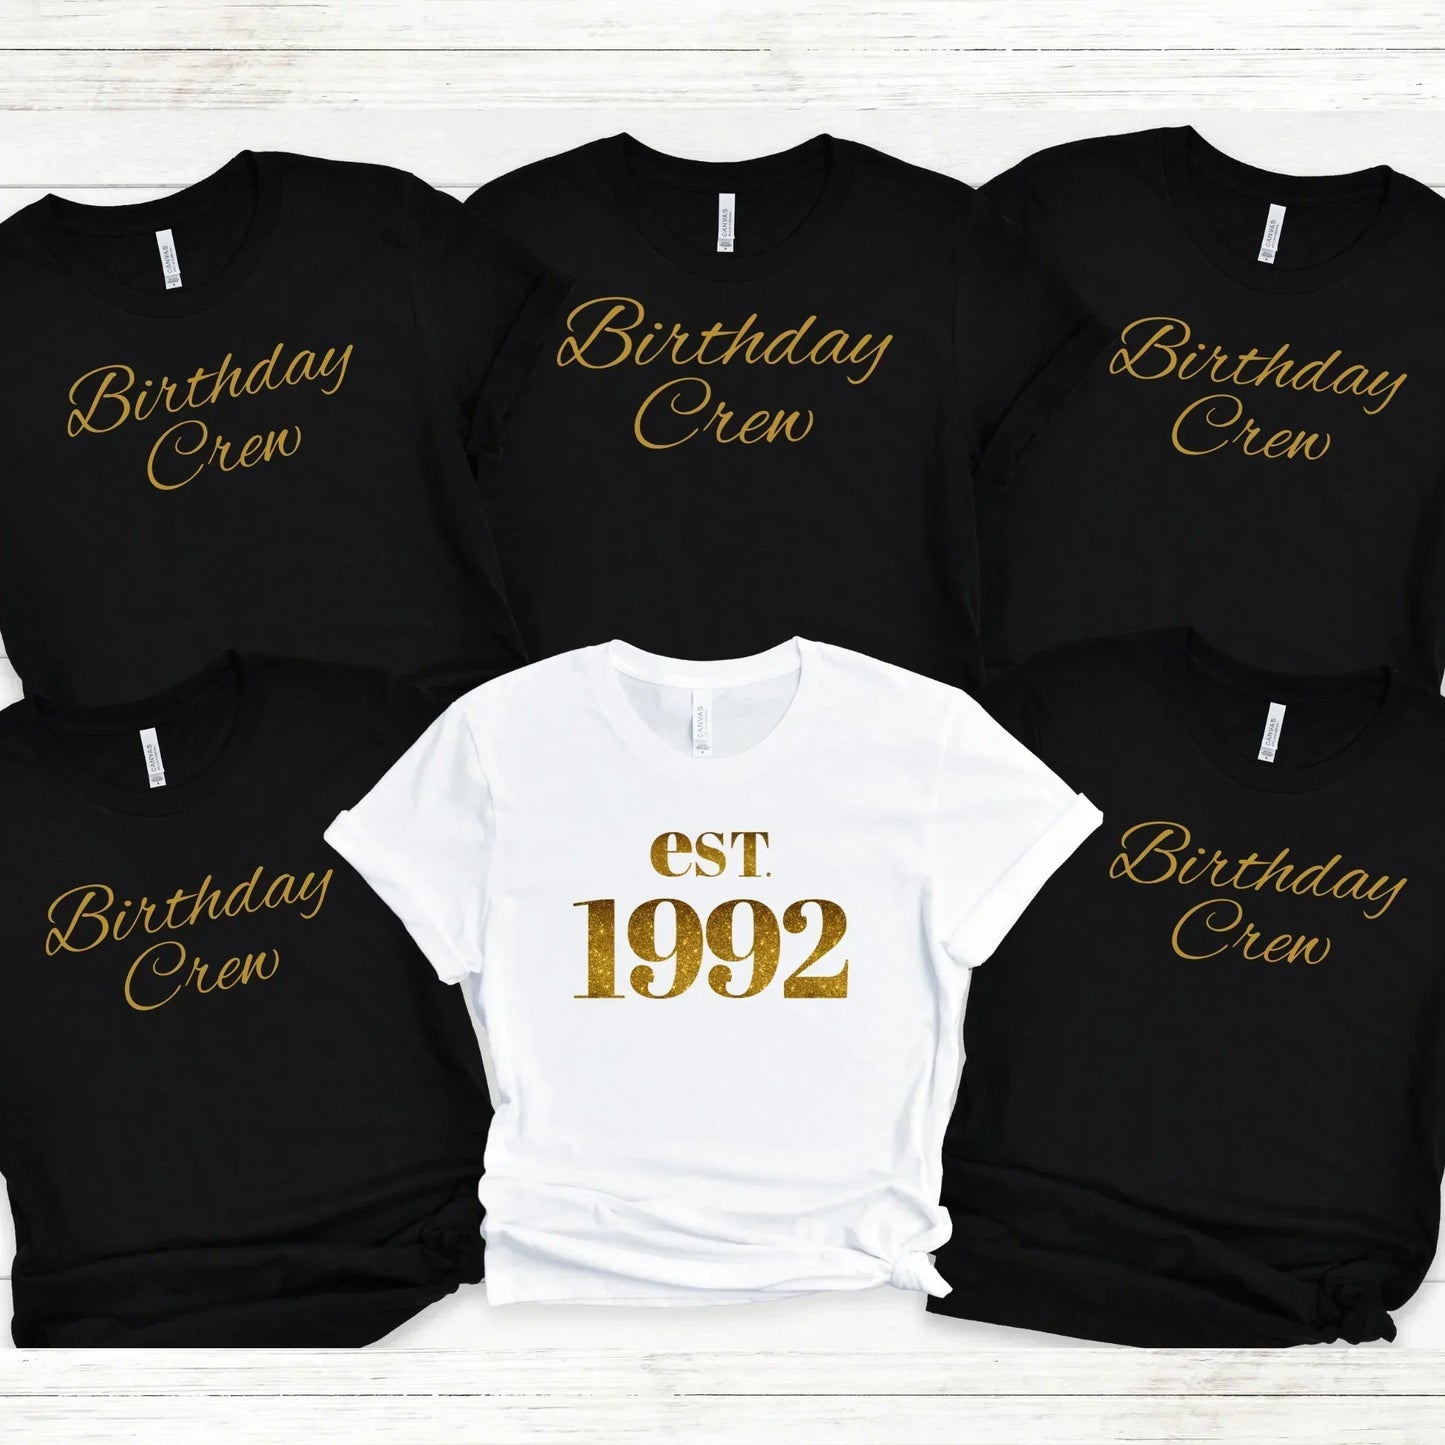 30th Birthday Shirt, Est 1992 Shirt, Birthday Year Shirt, Birthday Crew Shirt